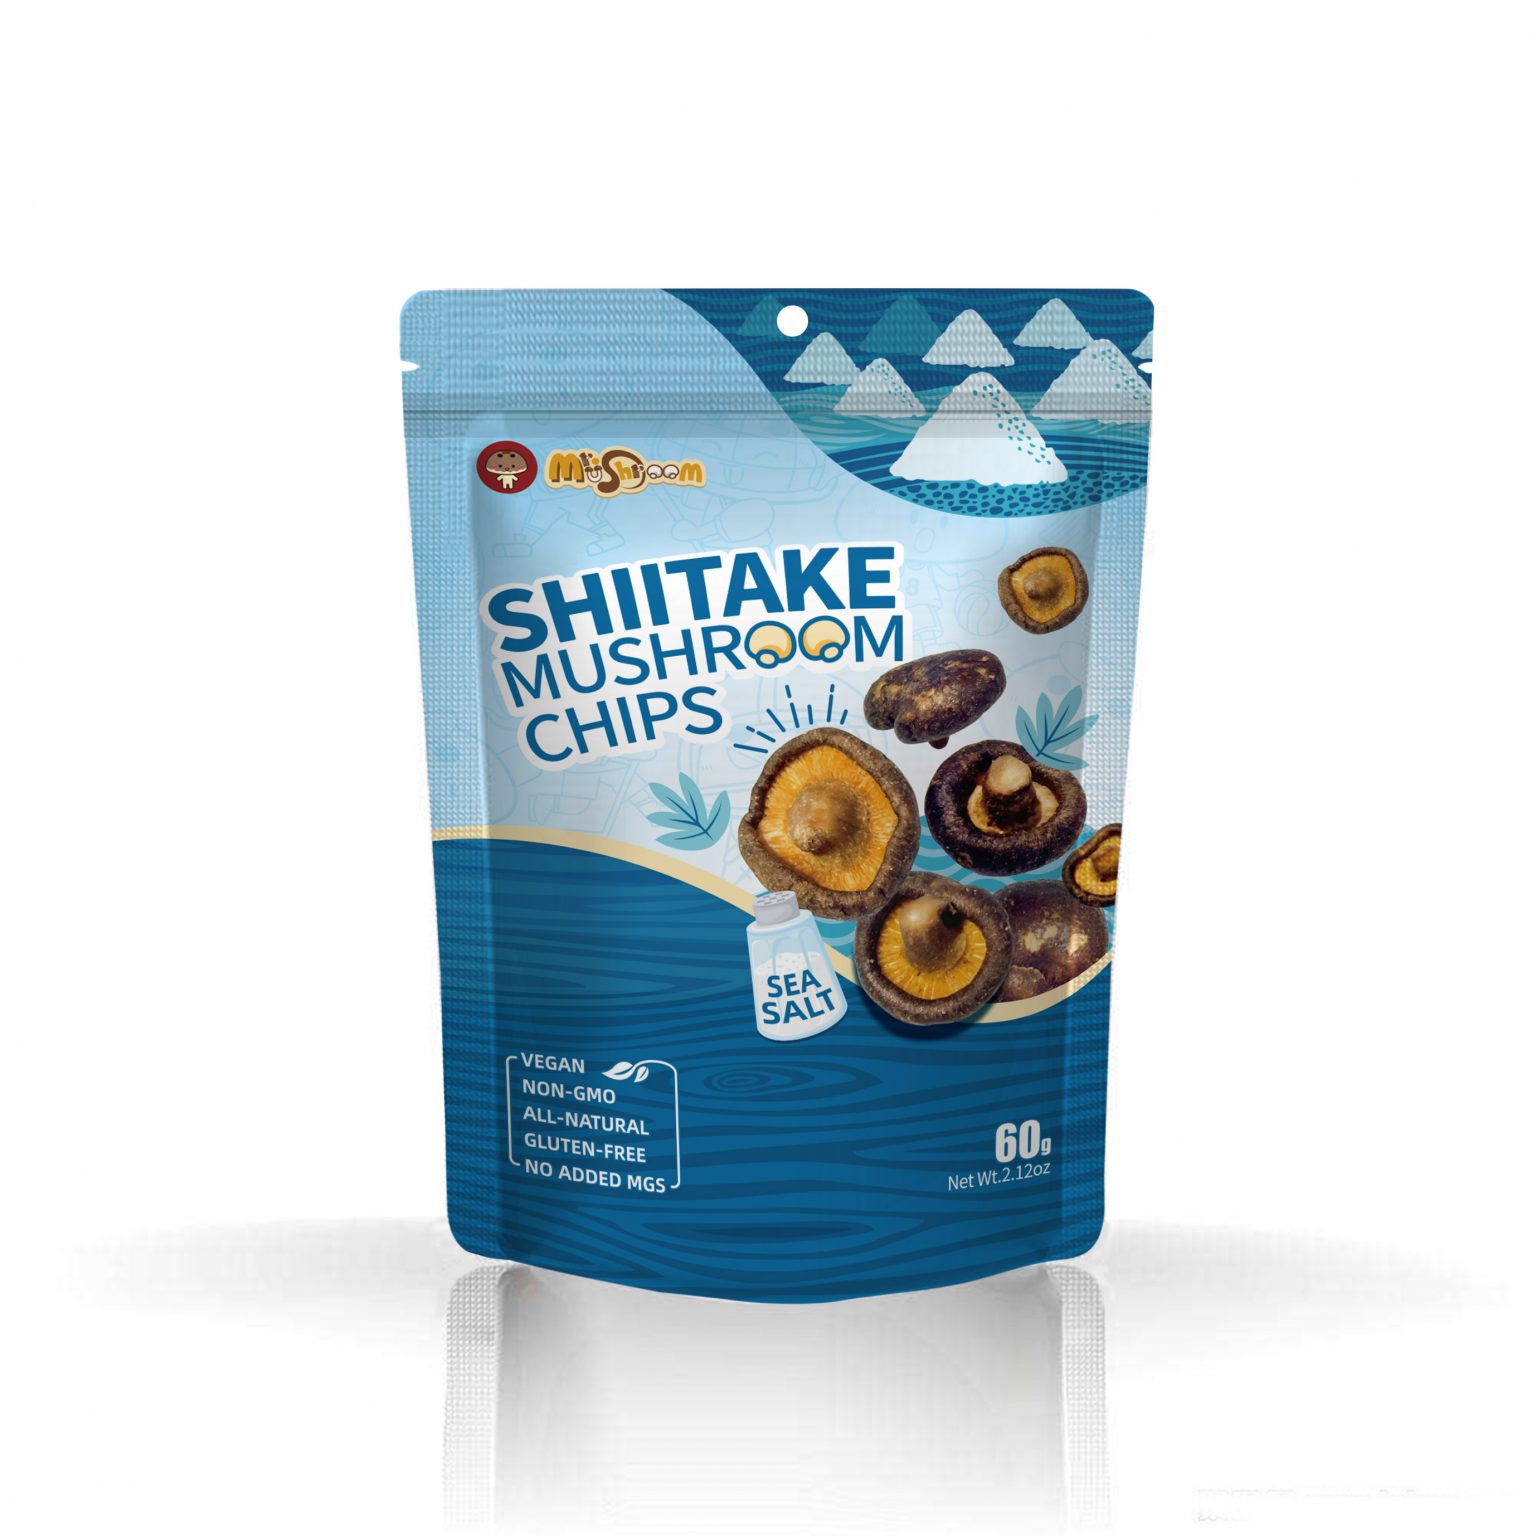 Shiitake Mushroom Chips Sea Salt